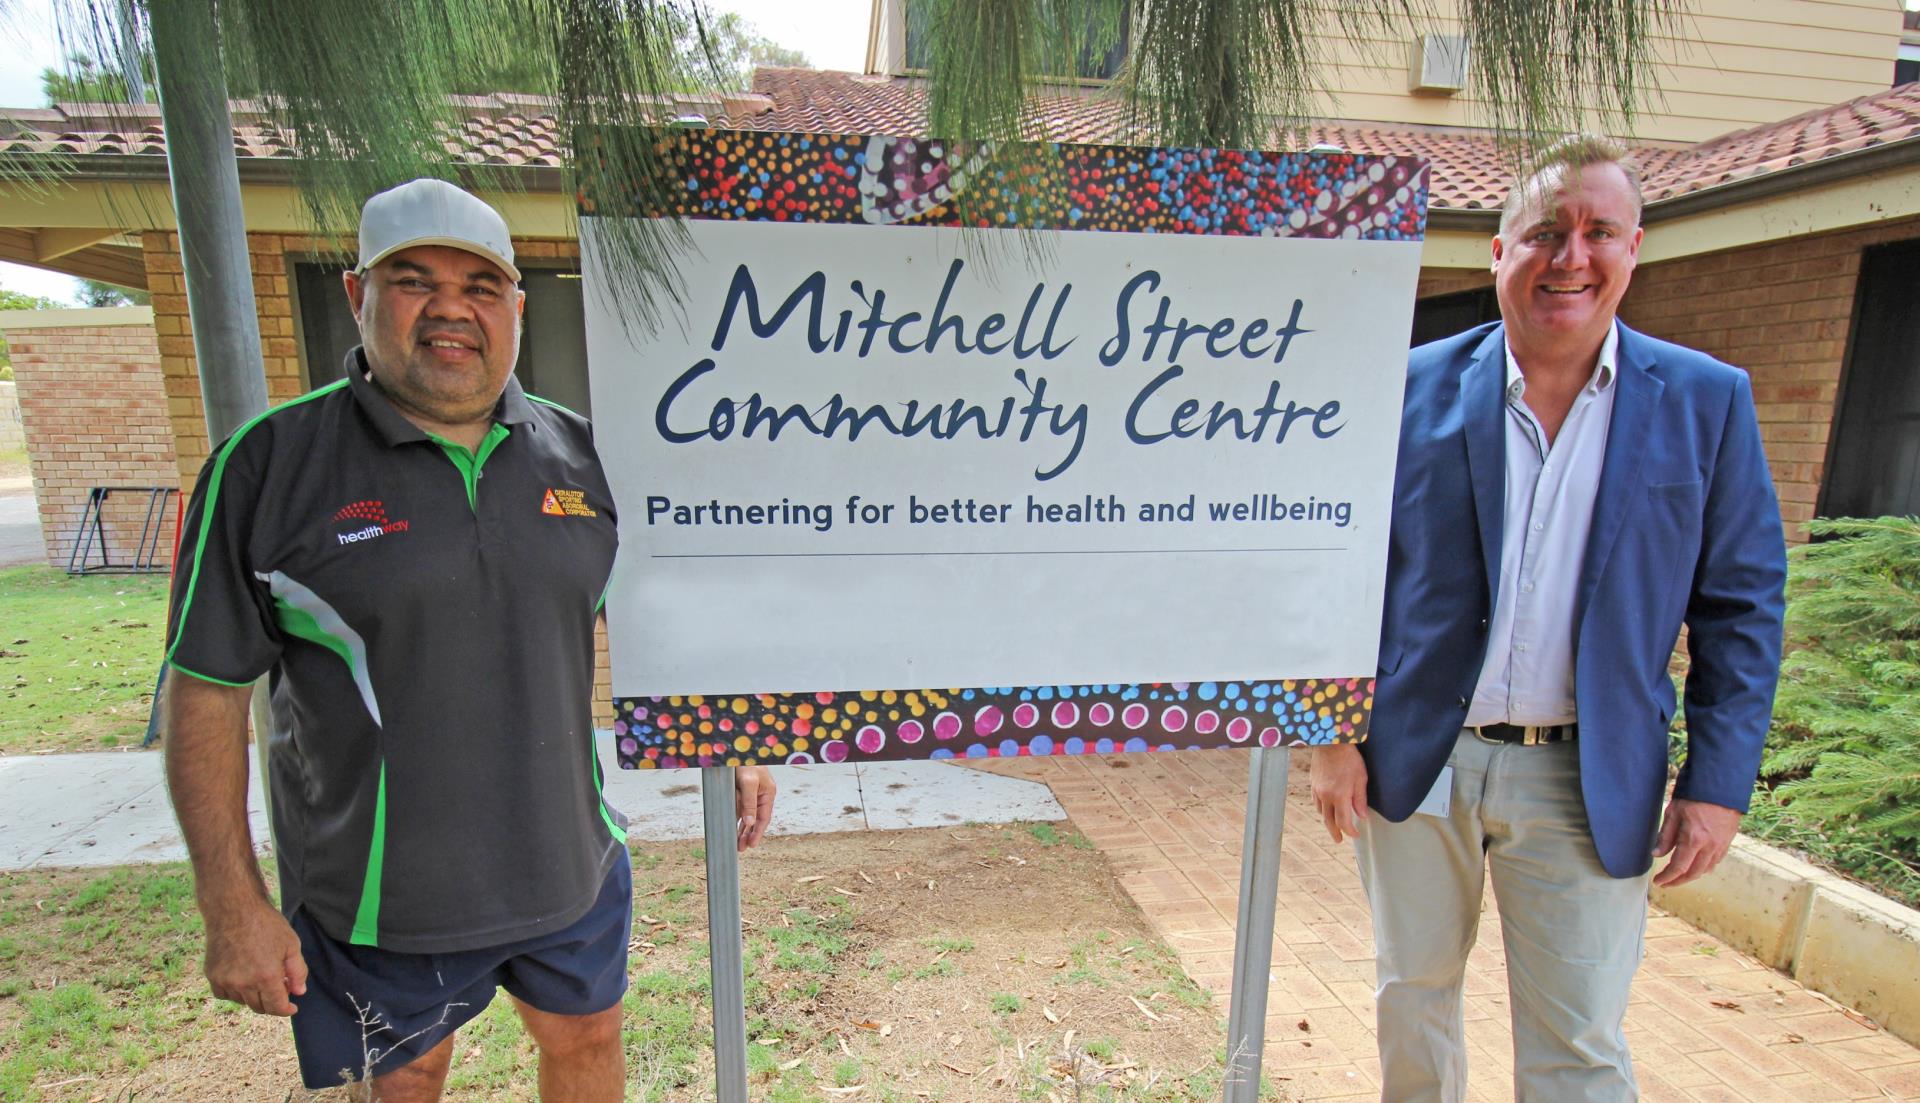 Mitchell Street Community Centre under new management